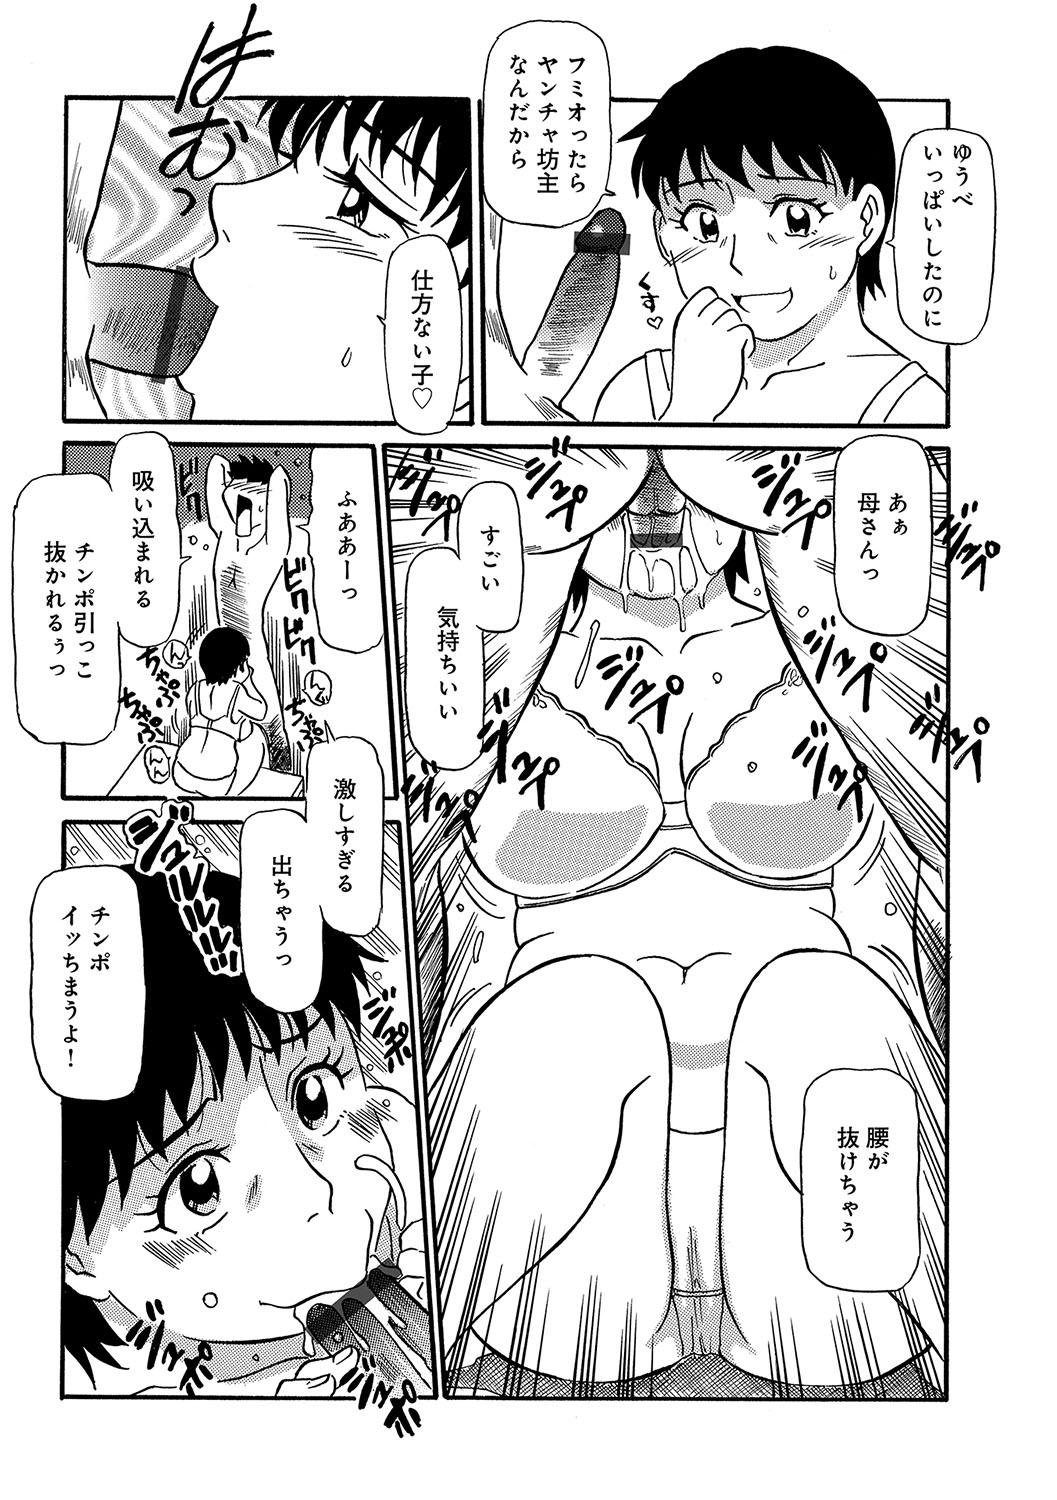 WEB Han Comic Geki Yaba! Vol.96 28